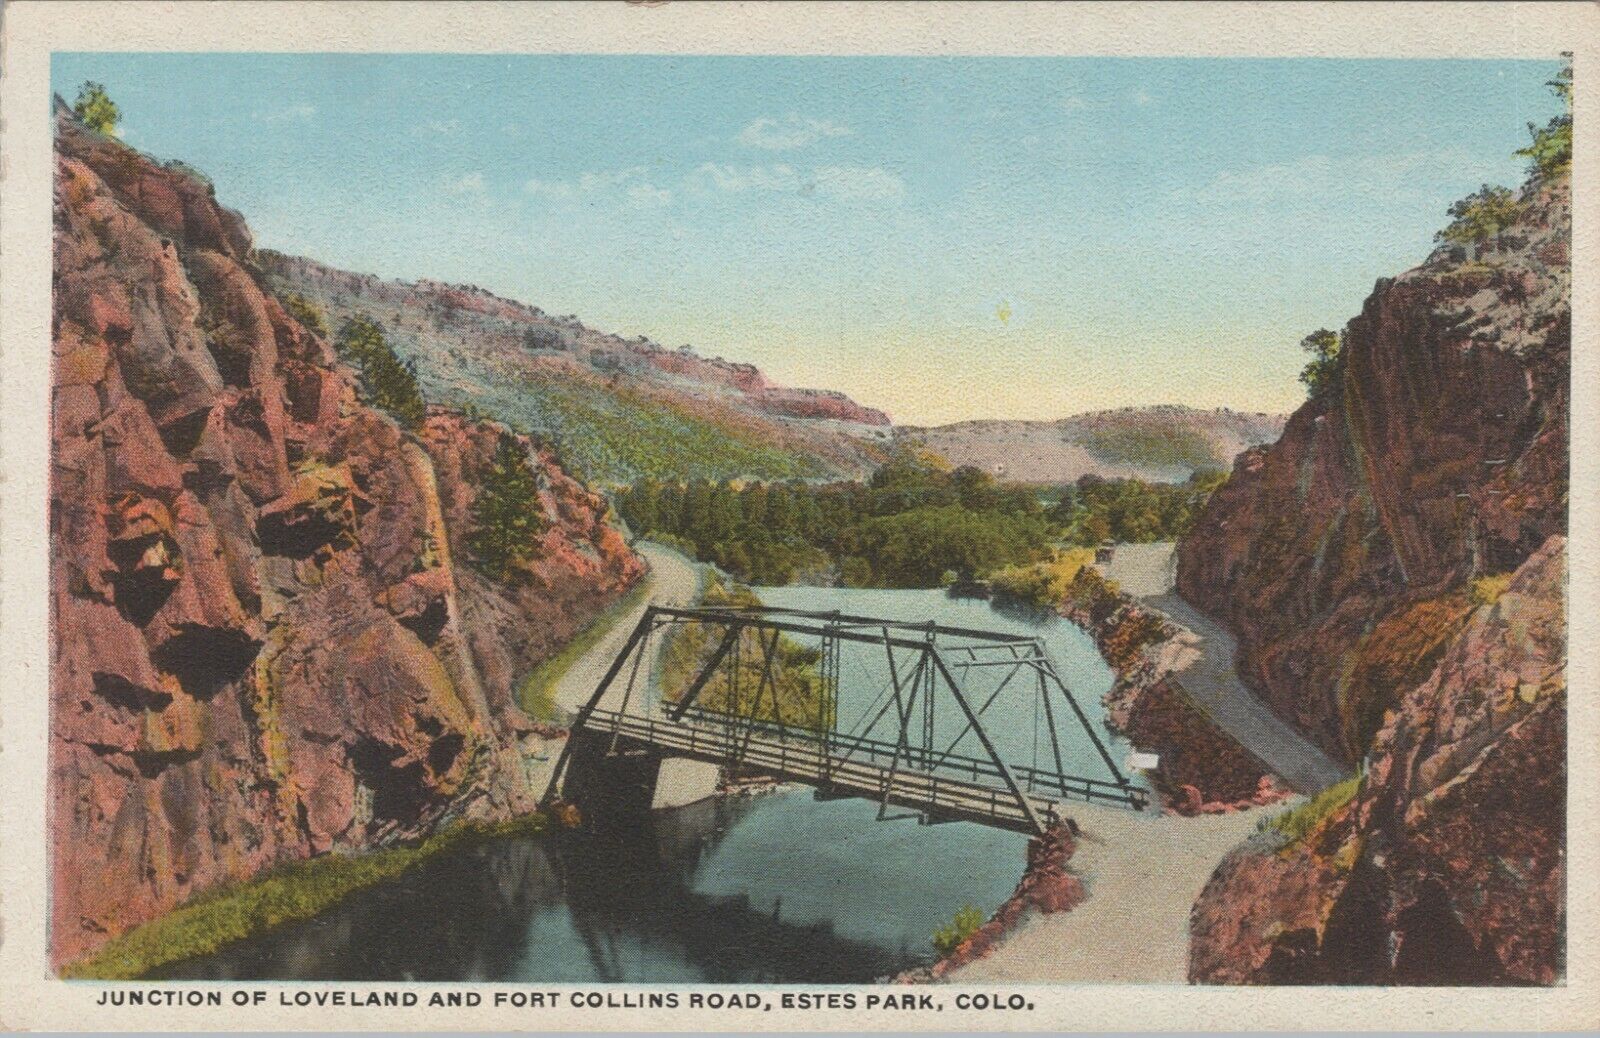 c1920s Bridge junction Loveland Fort Collins Road Estes Park Colorado D596